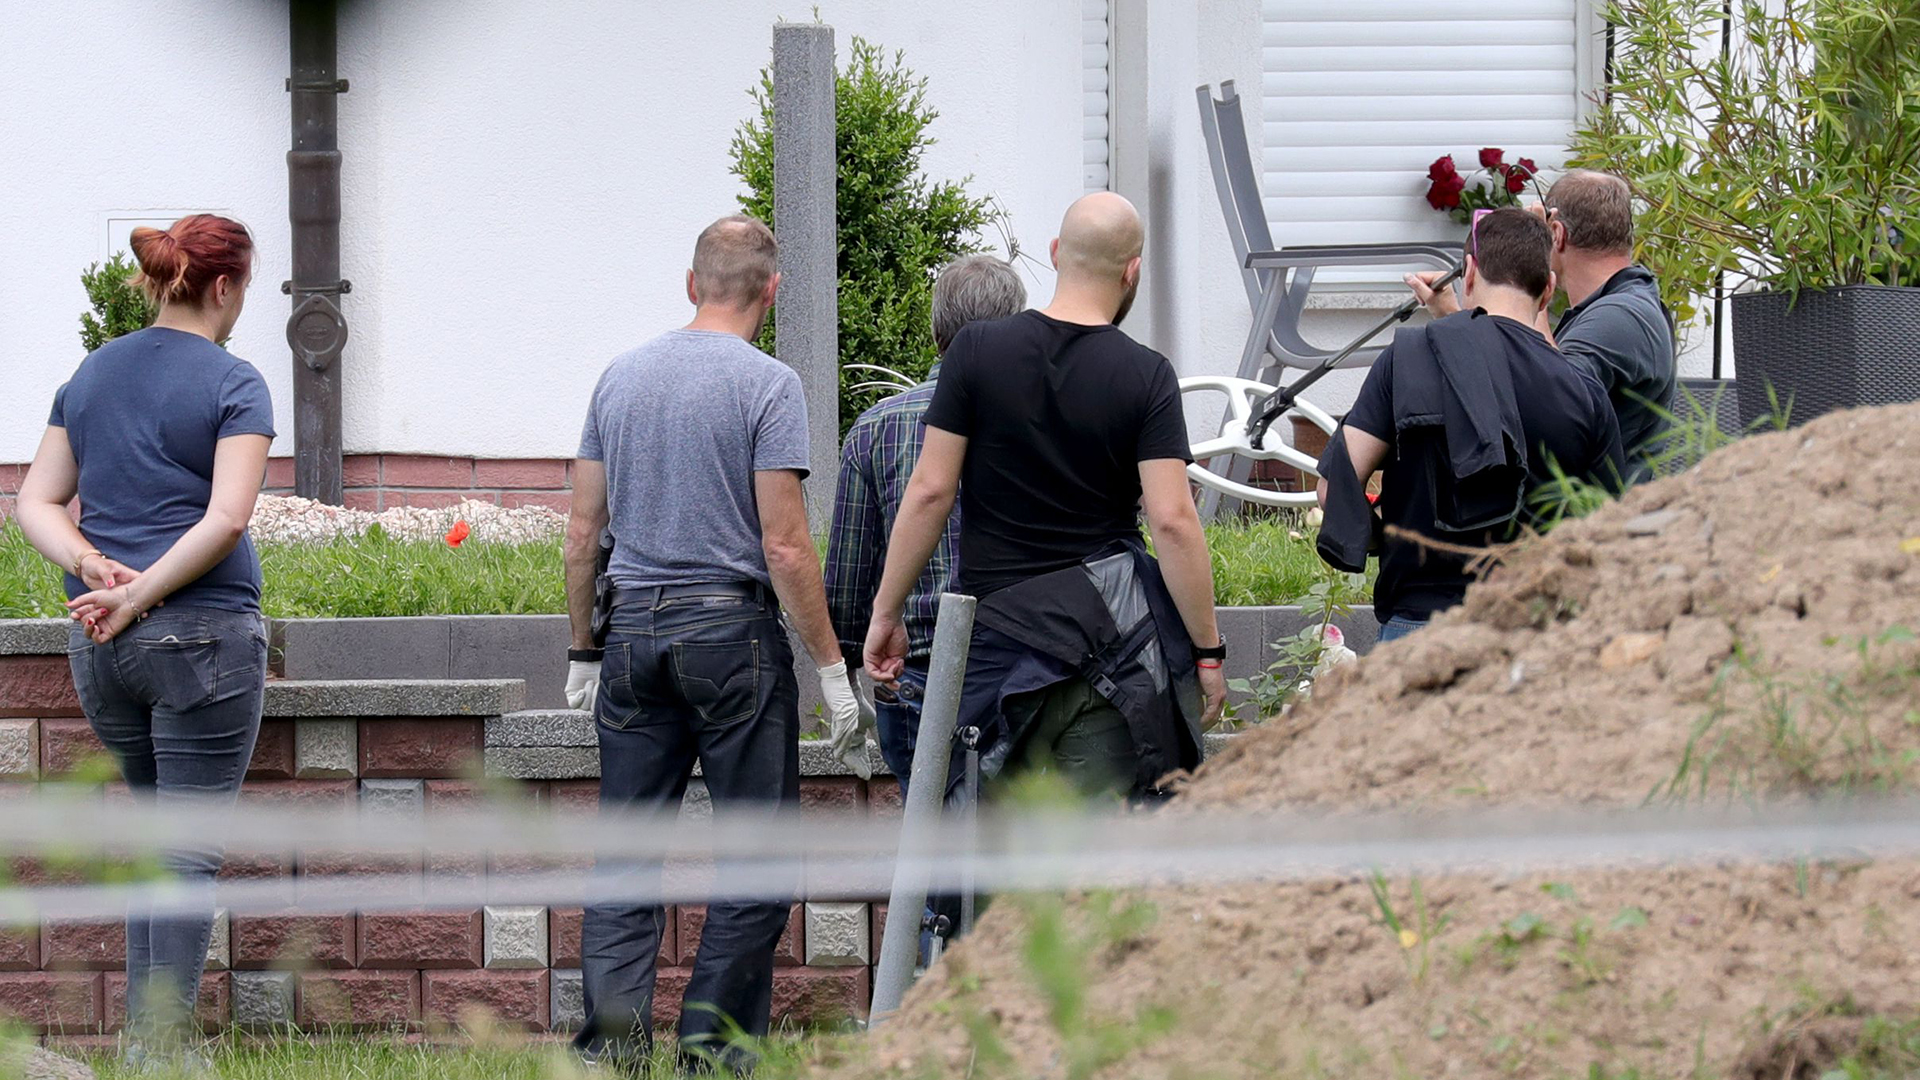 Polizisten untersuchen den Tatort in Wolfhagen-Istha| Bildquelle: ARMANDO BABANI/EPA-EFE/REX